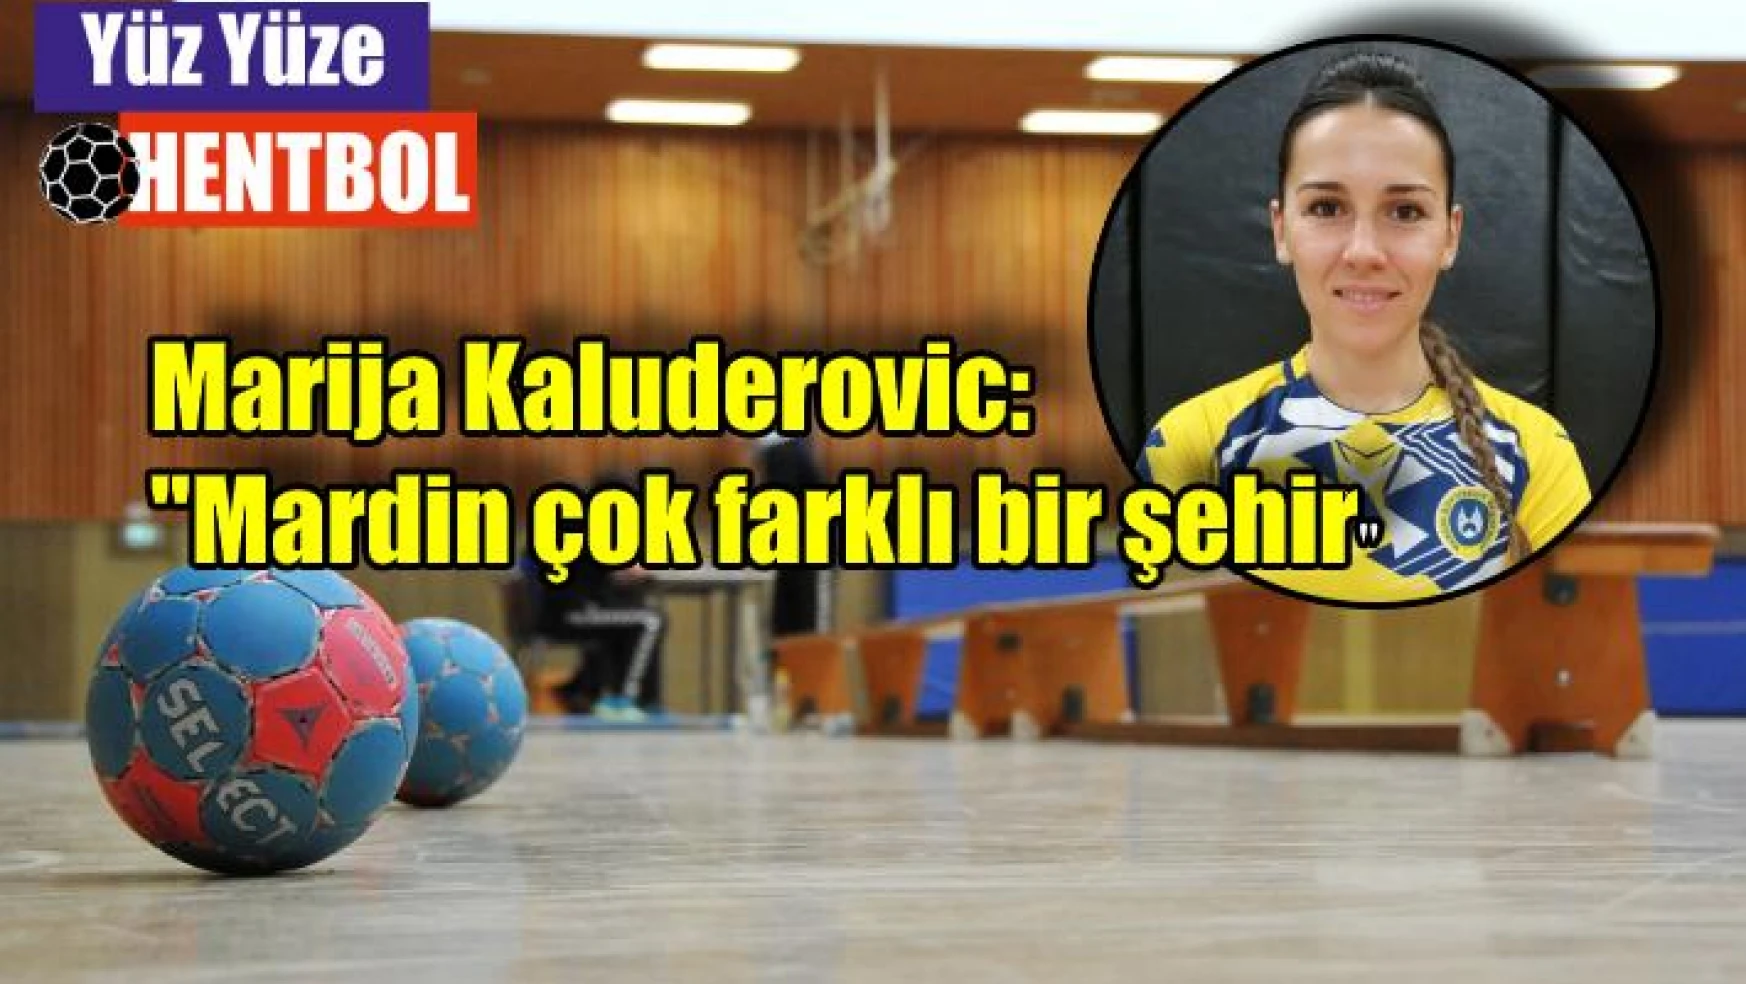 Marija Kaludjerovic: “Mardin çok farklı bir şehir…”